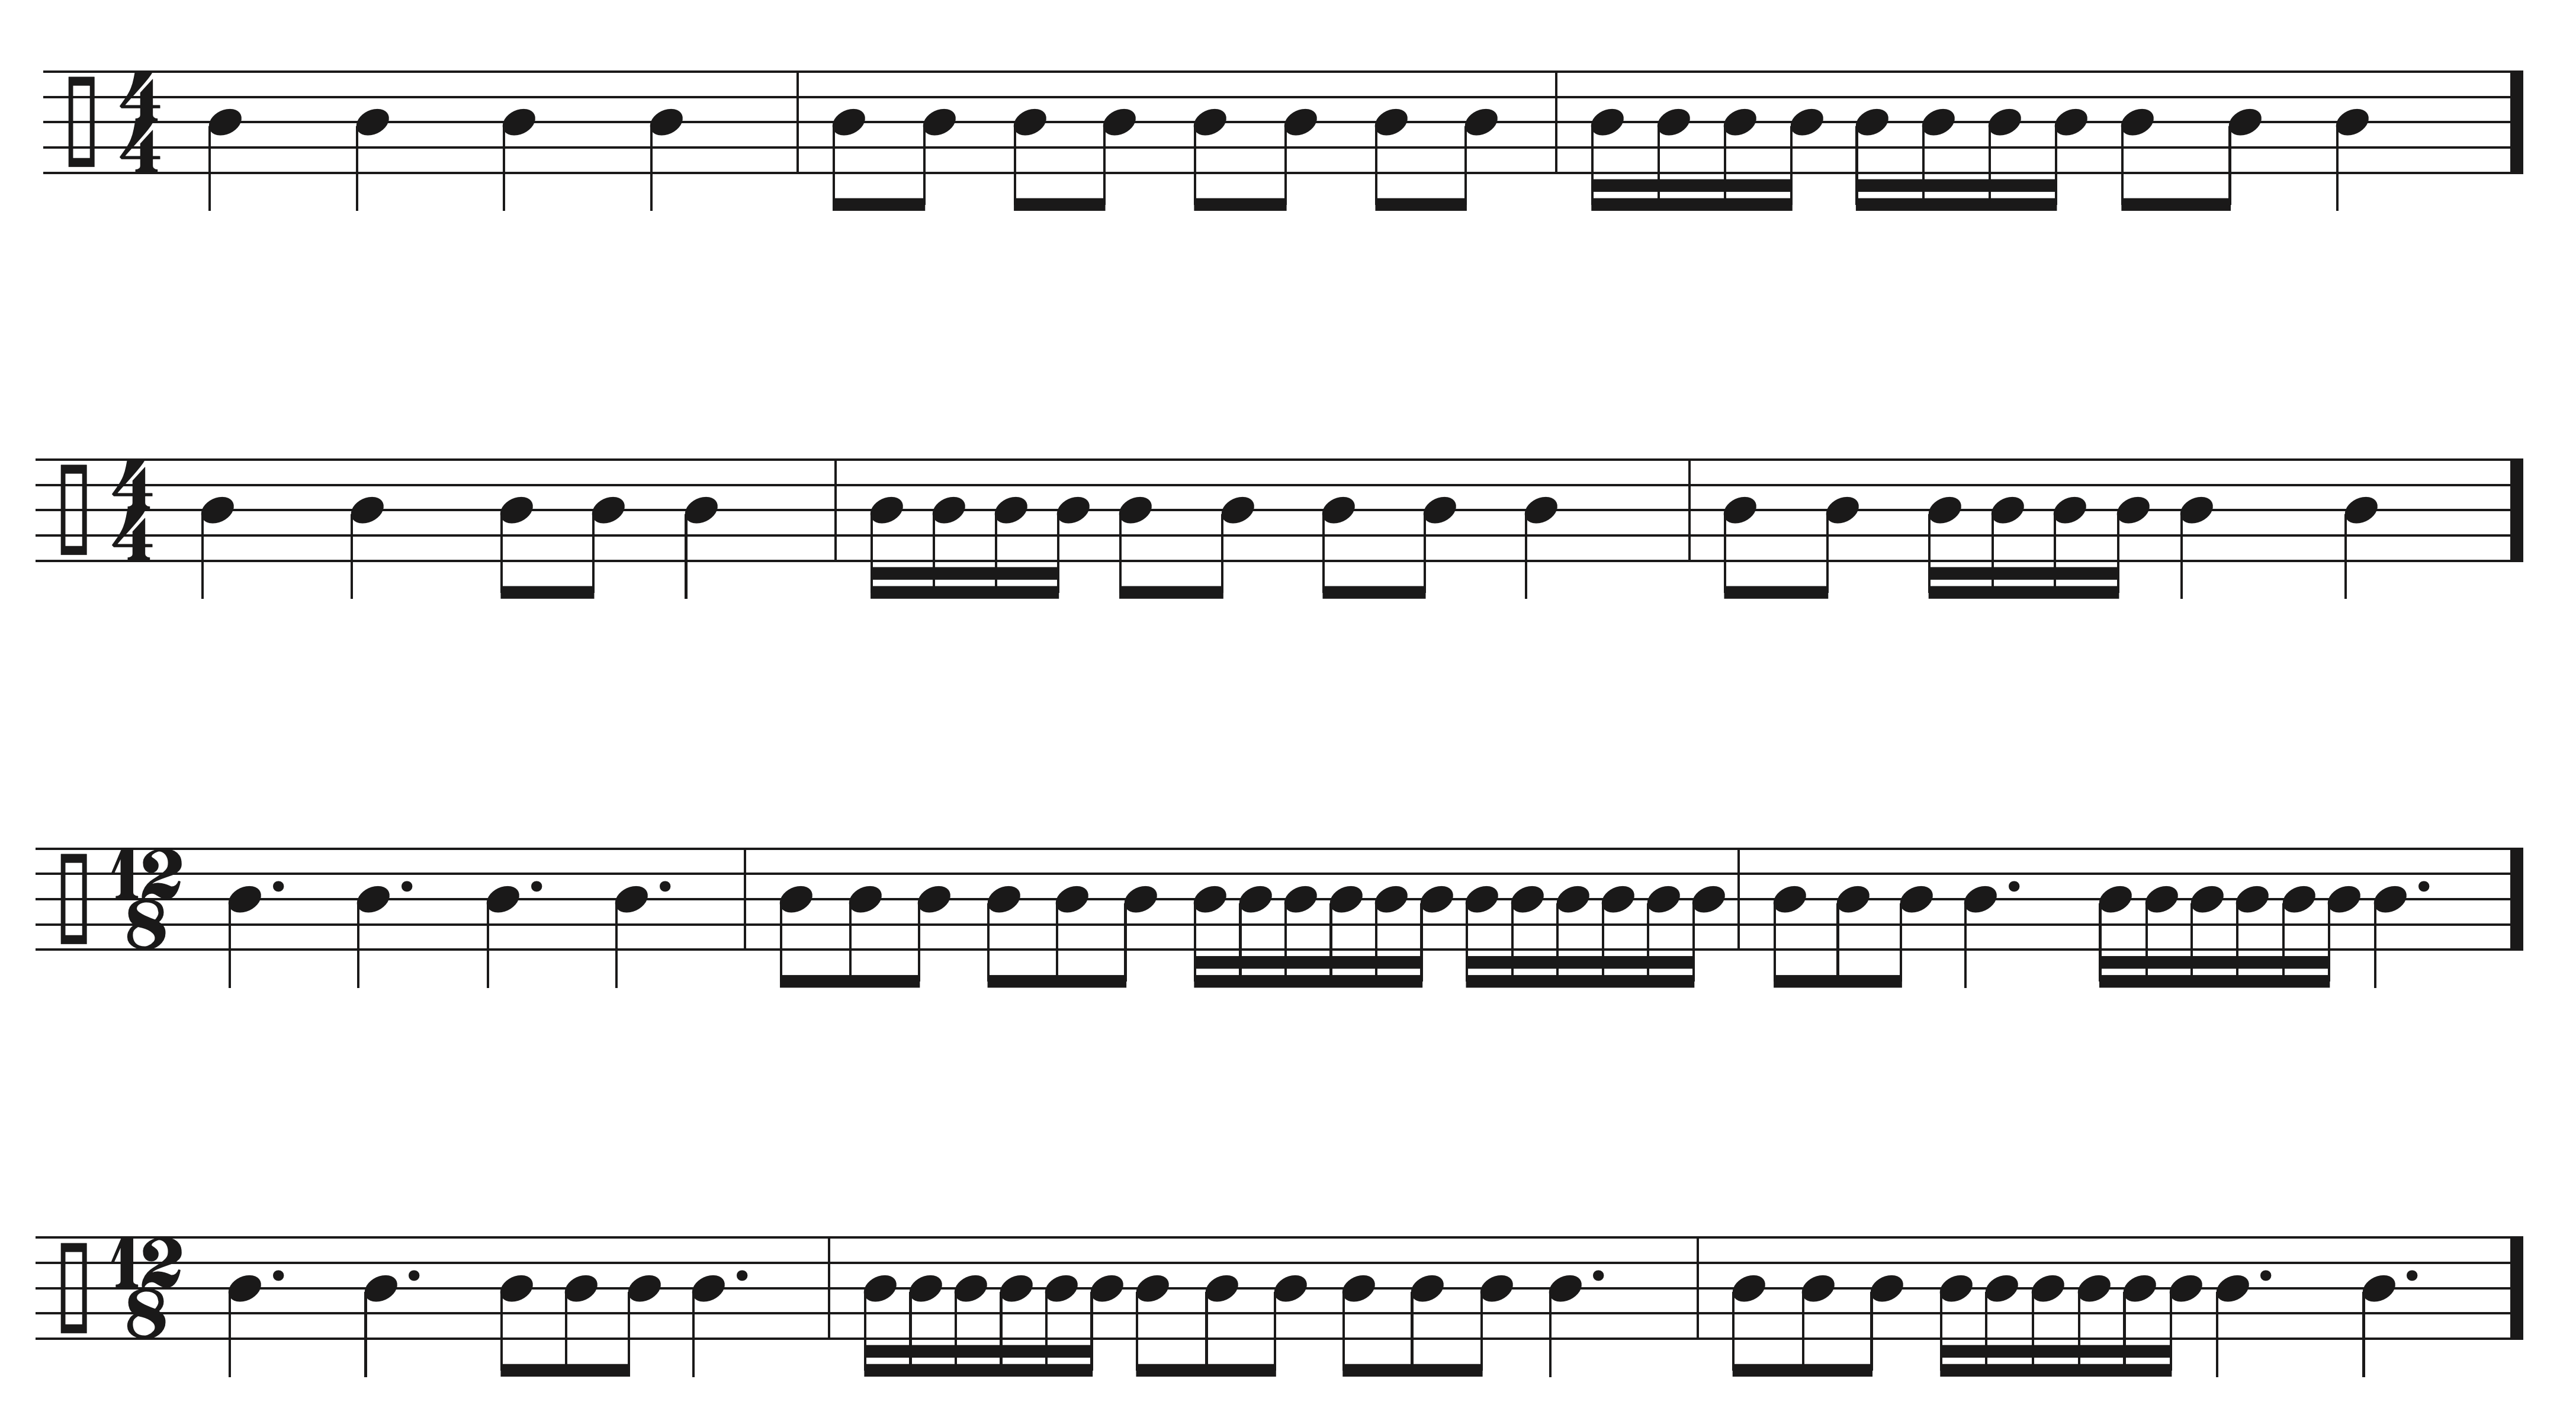 Basics of Rhythm Sight Singing exercise example